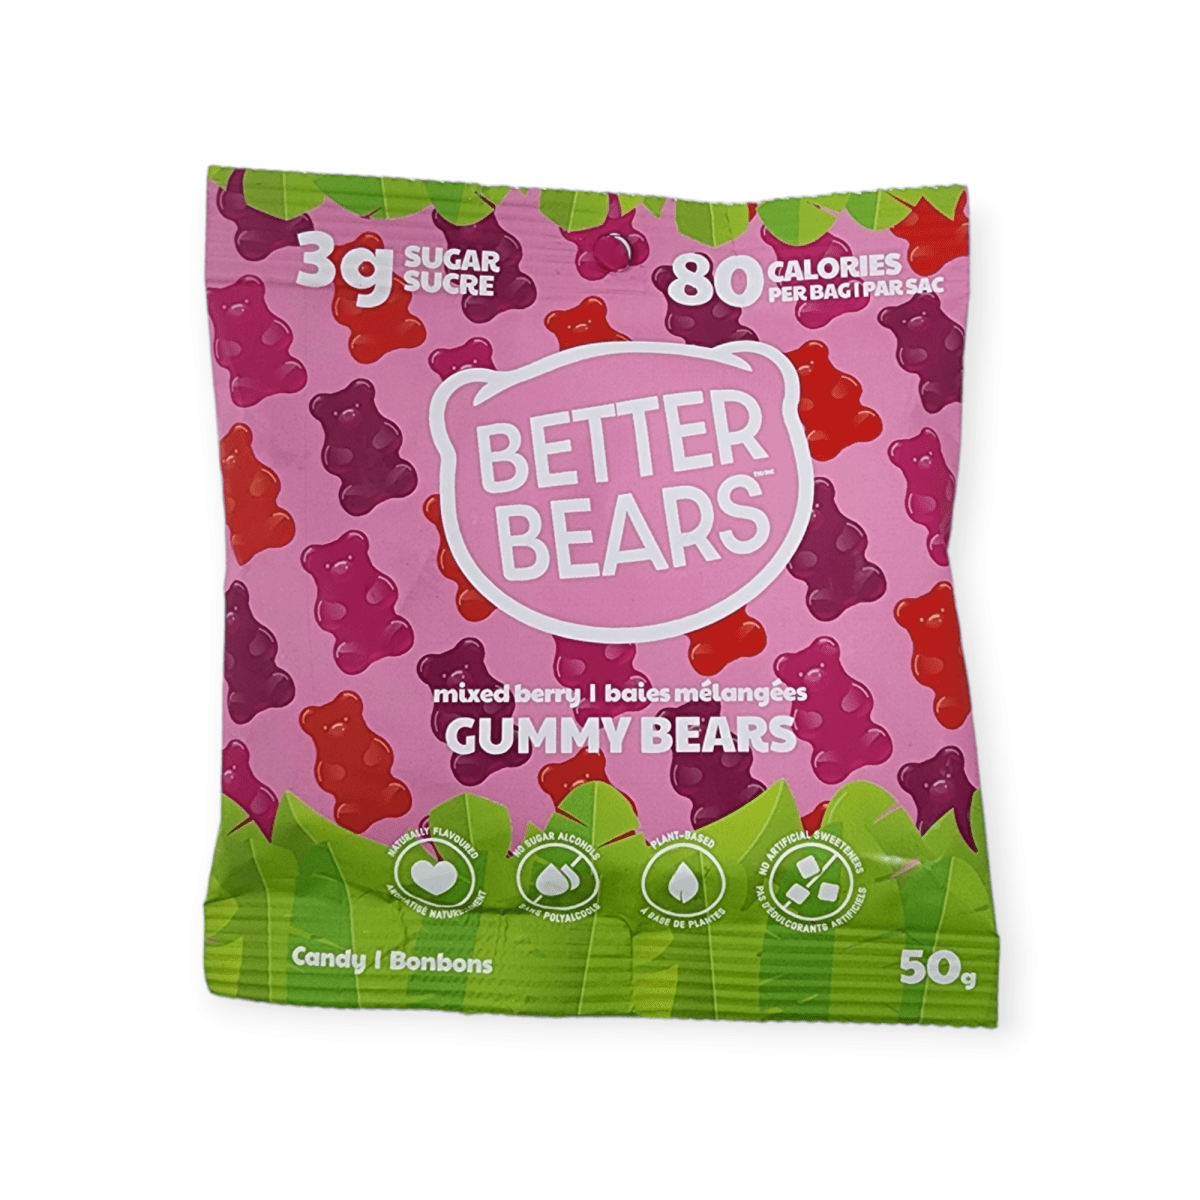 Better Bears Gummy Bears Mixed Berry (50g)